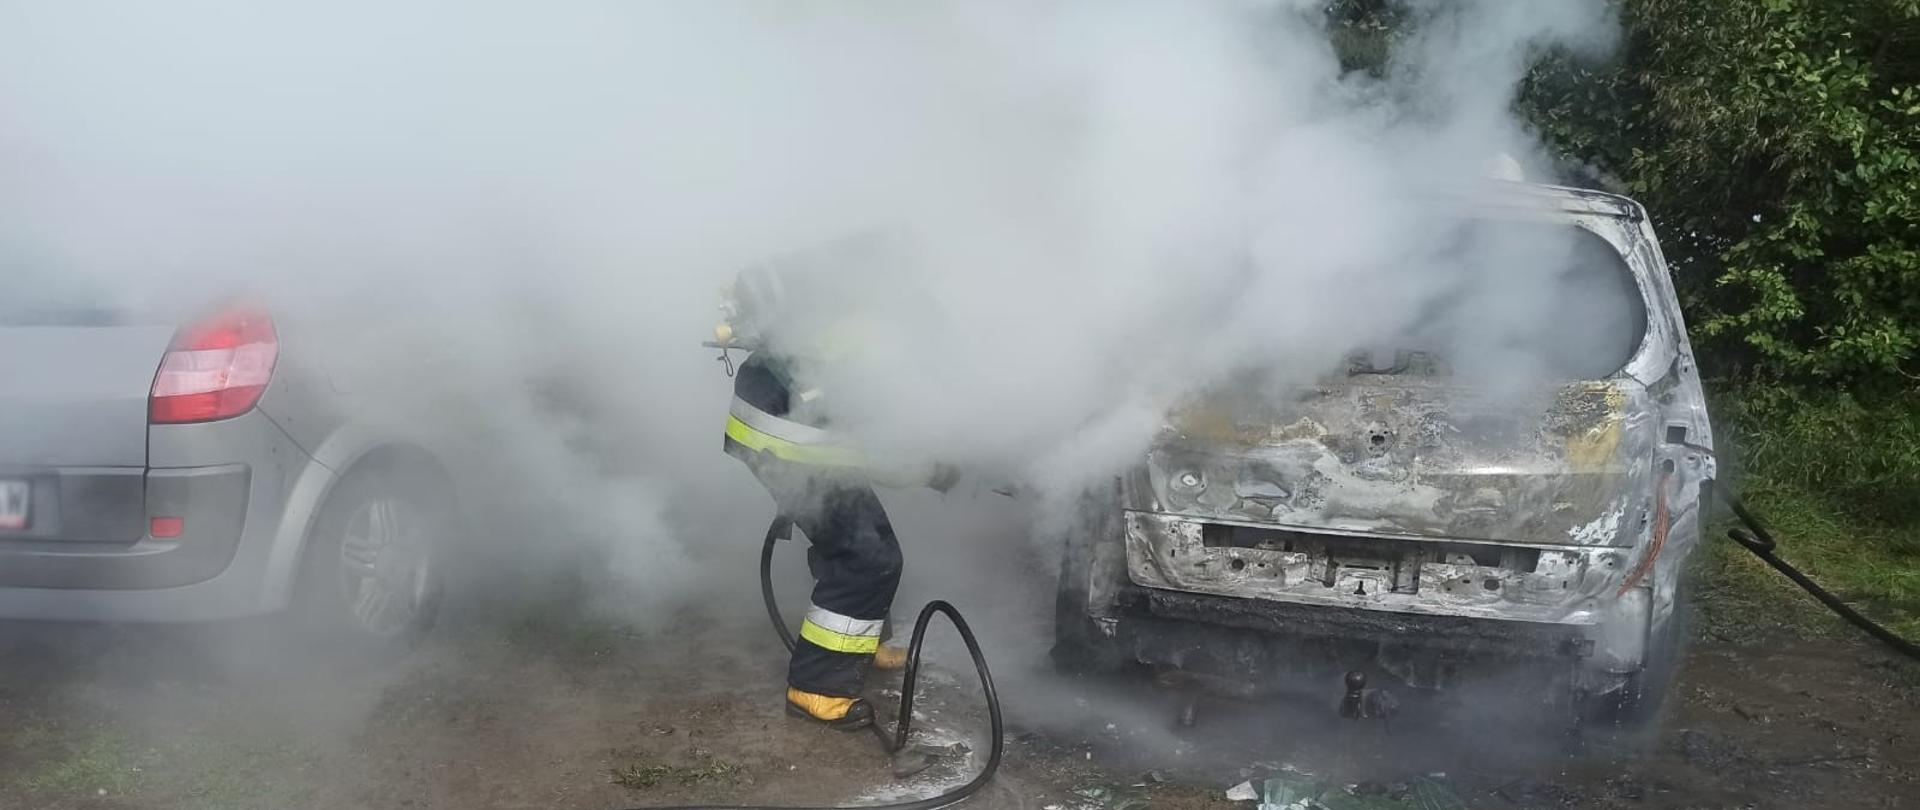 Strażak gasi samochód z którego wydobywa się dym.